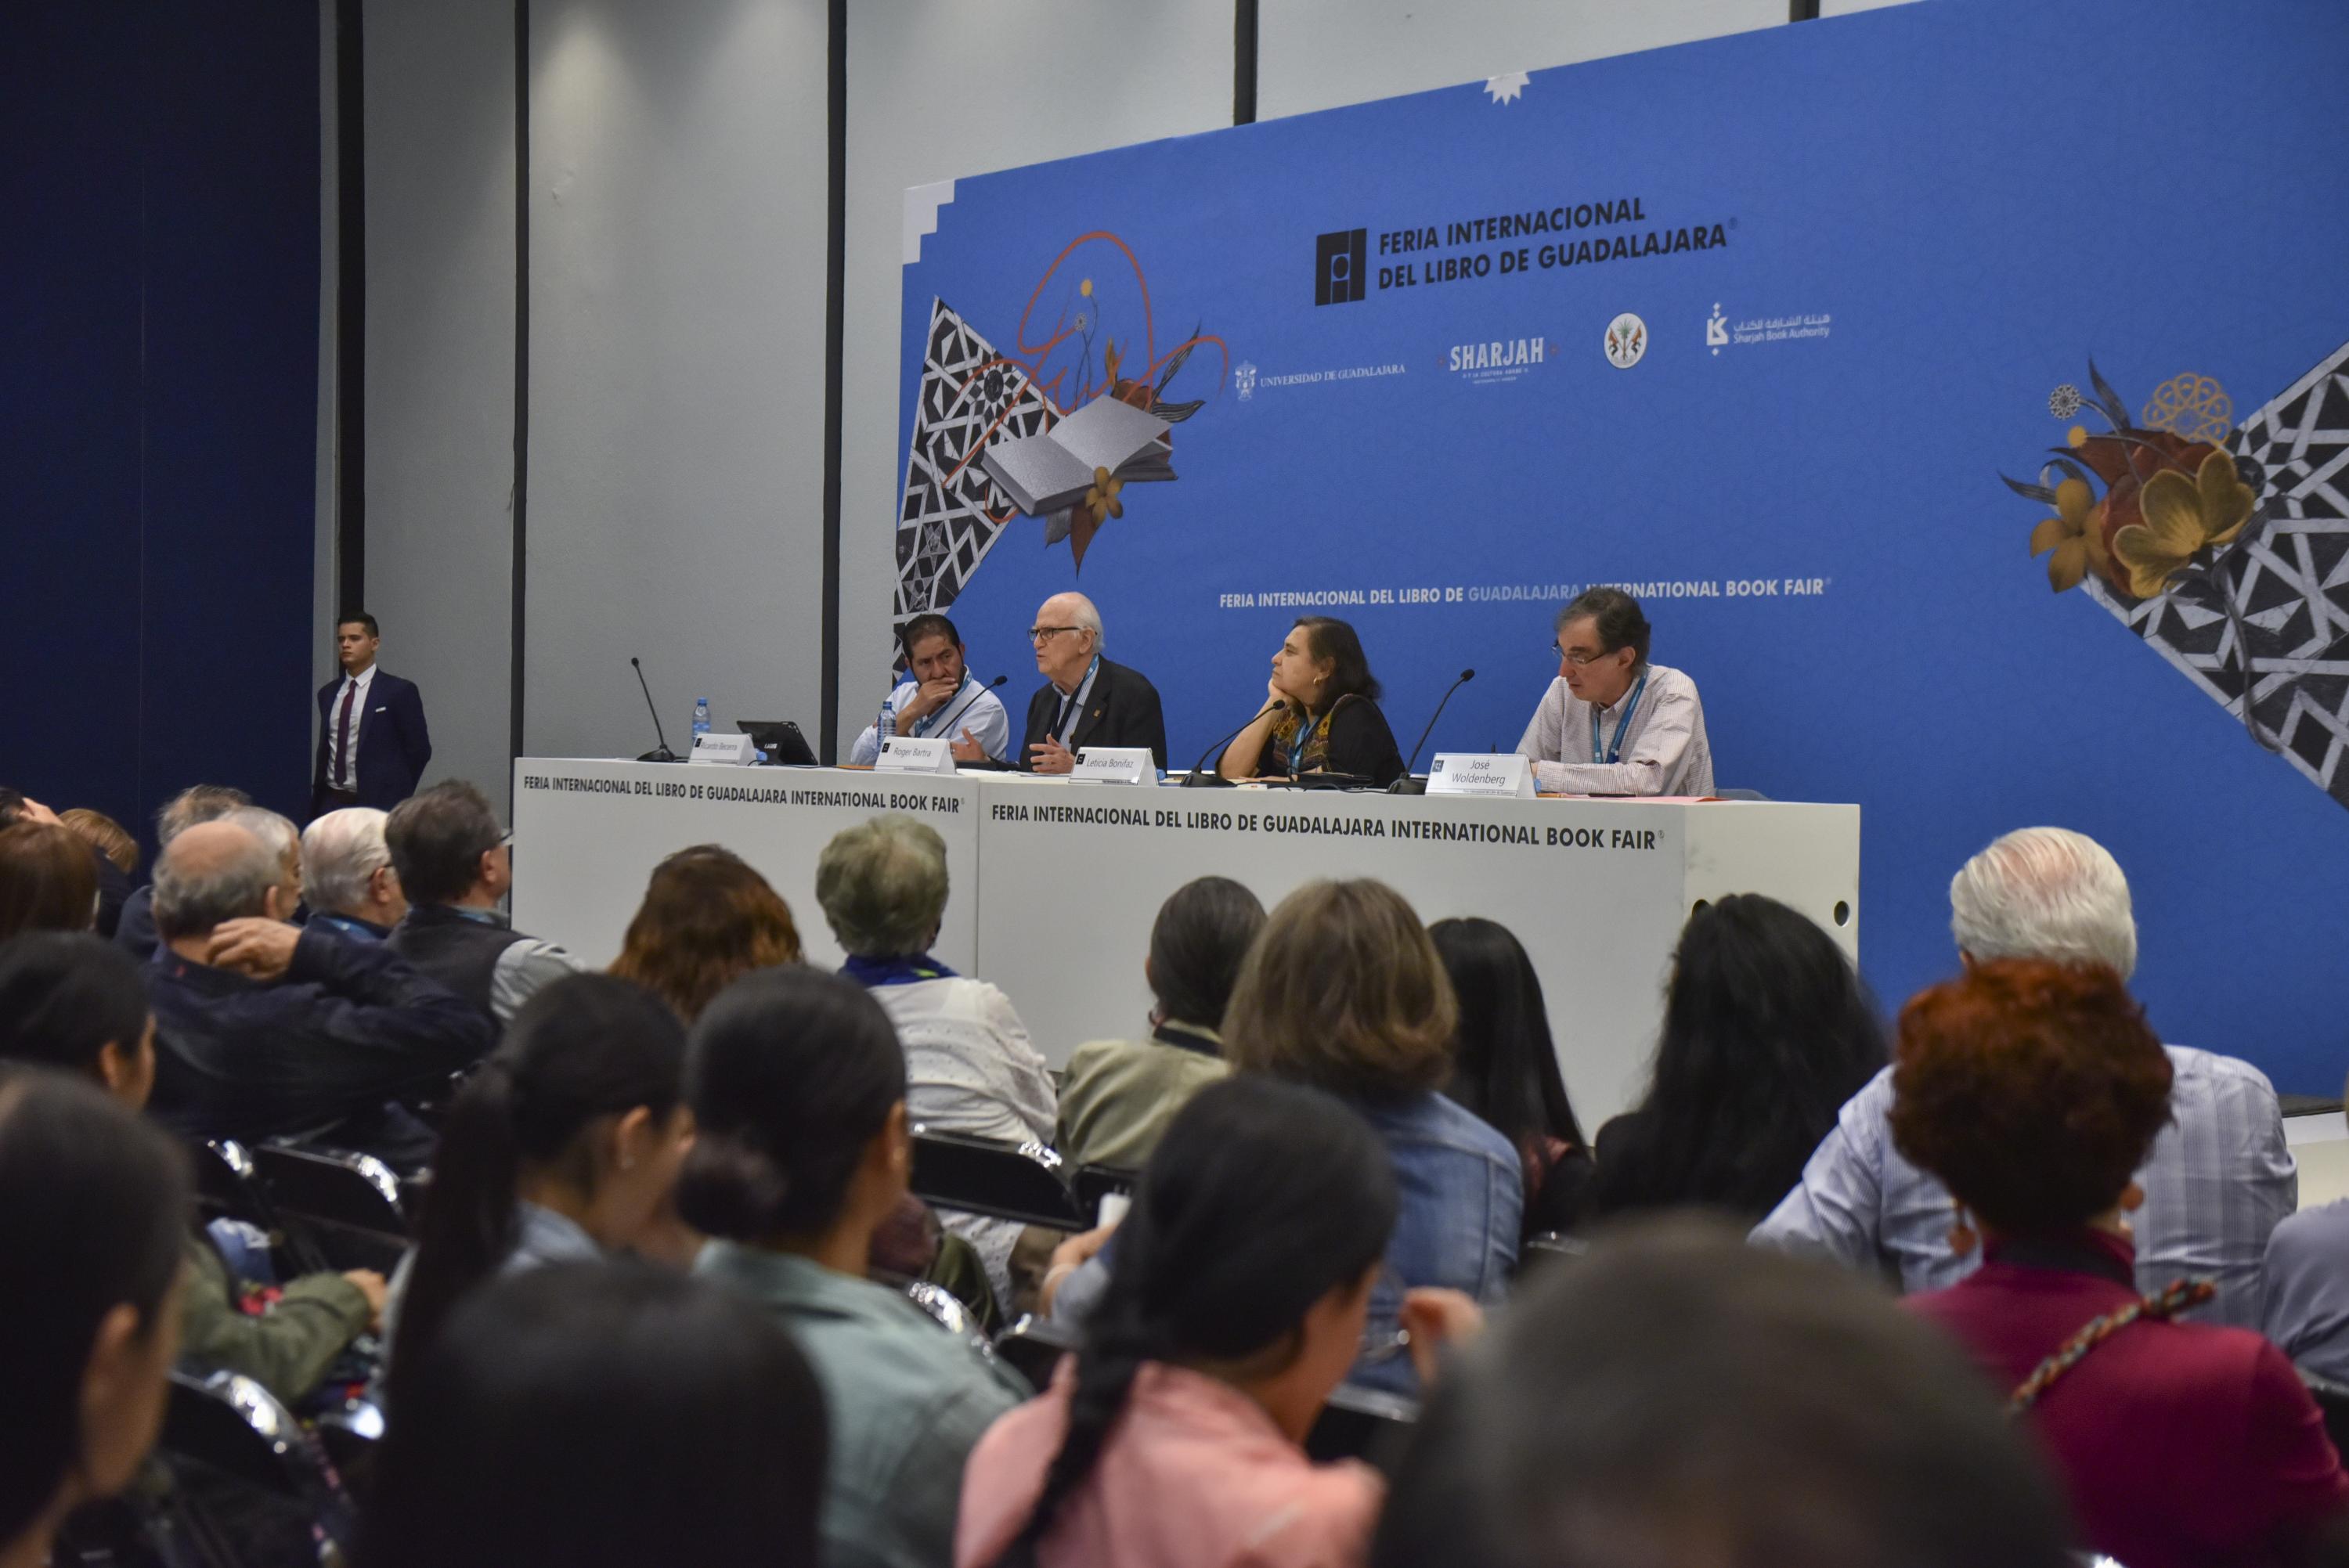 En el “Foro Nexos: preguntas desde la izquierda”, participaron Ricardo Becerra, Leticia Bonifaz y José Woldenberg, además de Bartra, quienes hablaron sobre los riesgos de la democracia